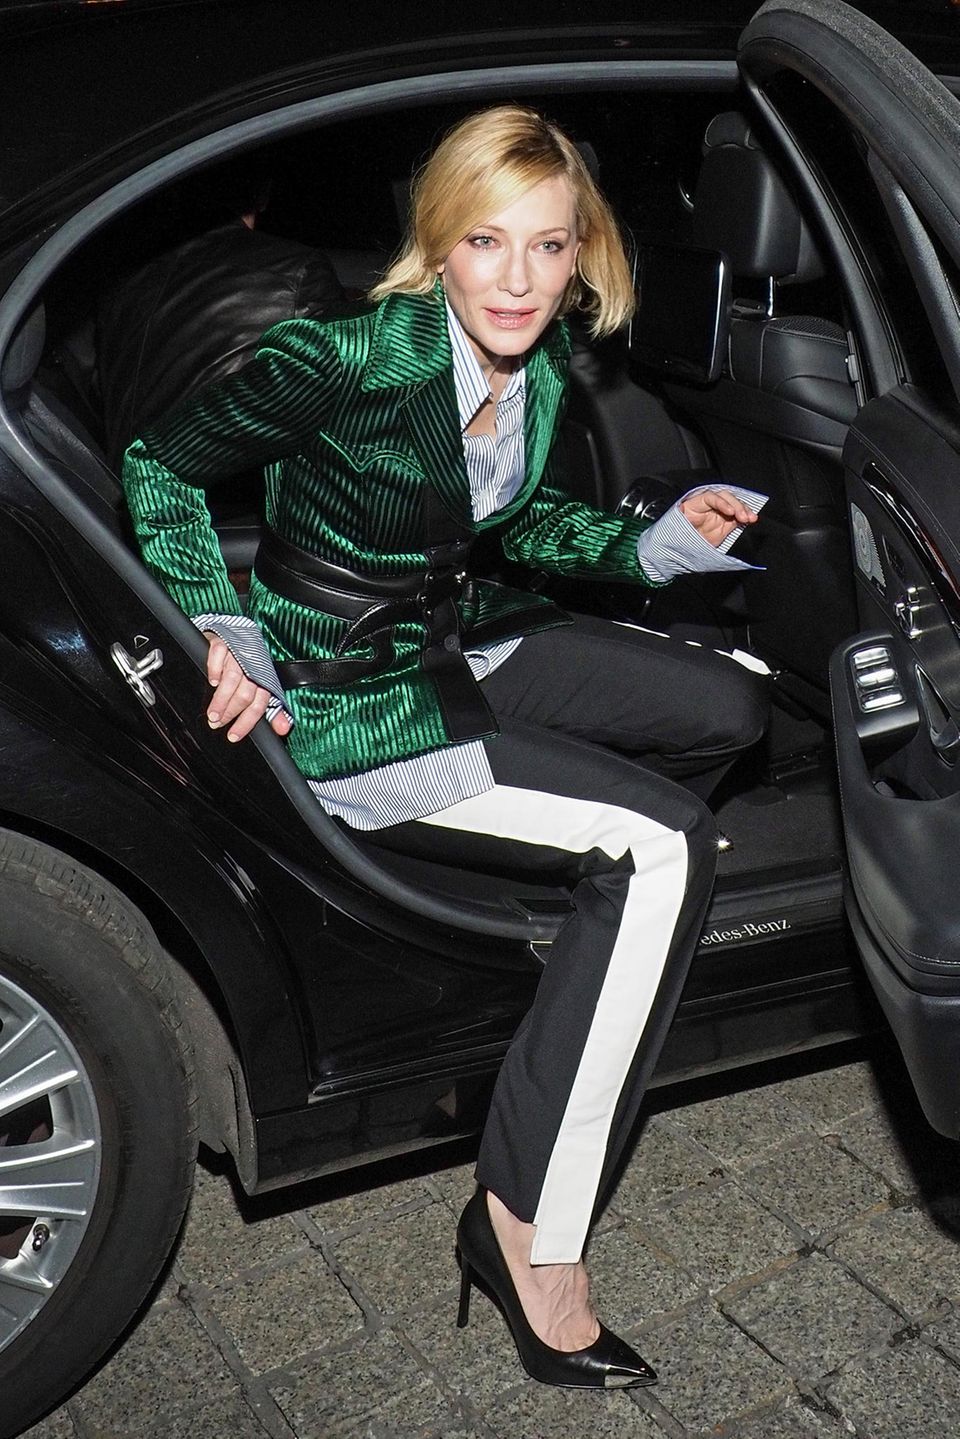 Auftritt Hollywood-Star! Cate Blanchett besucht in Paris die Boutique-Eröffnung von Louis Vuitton.